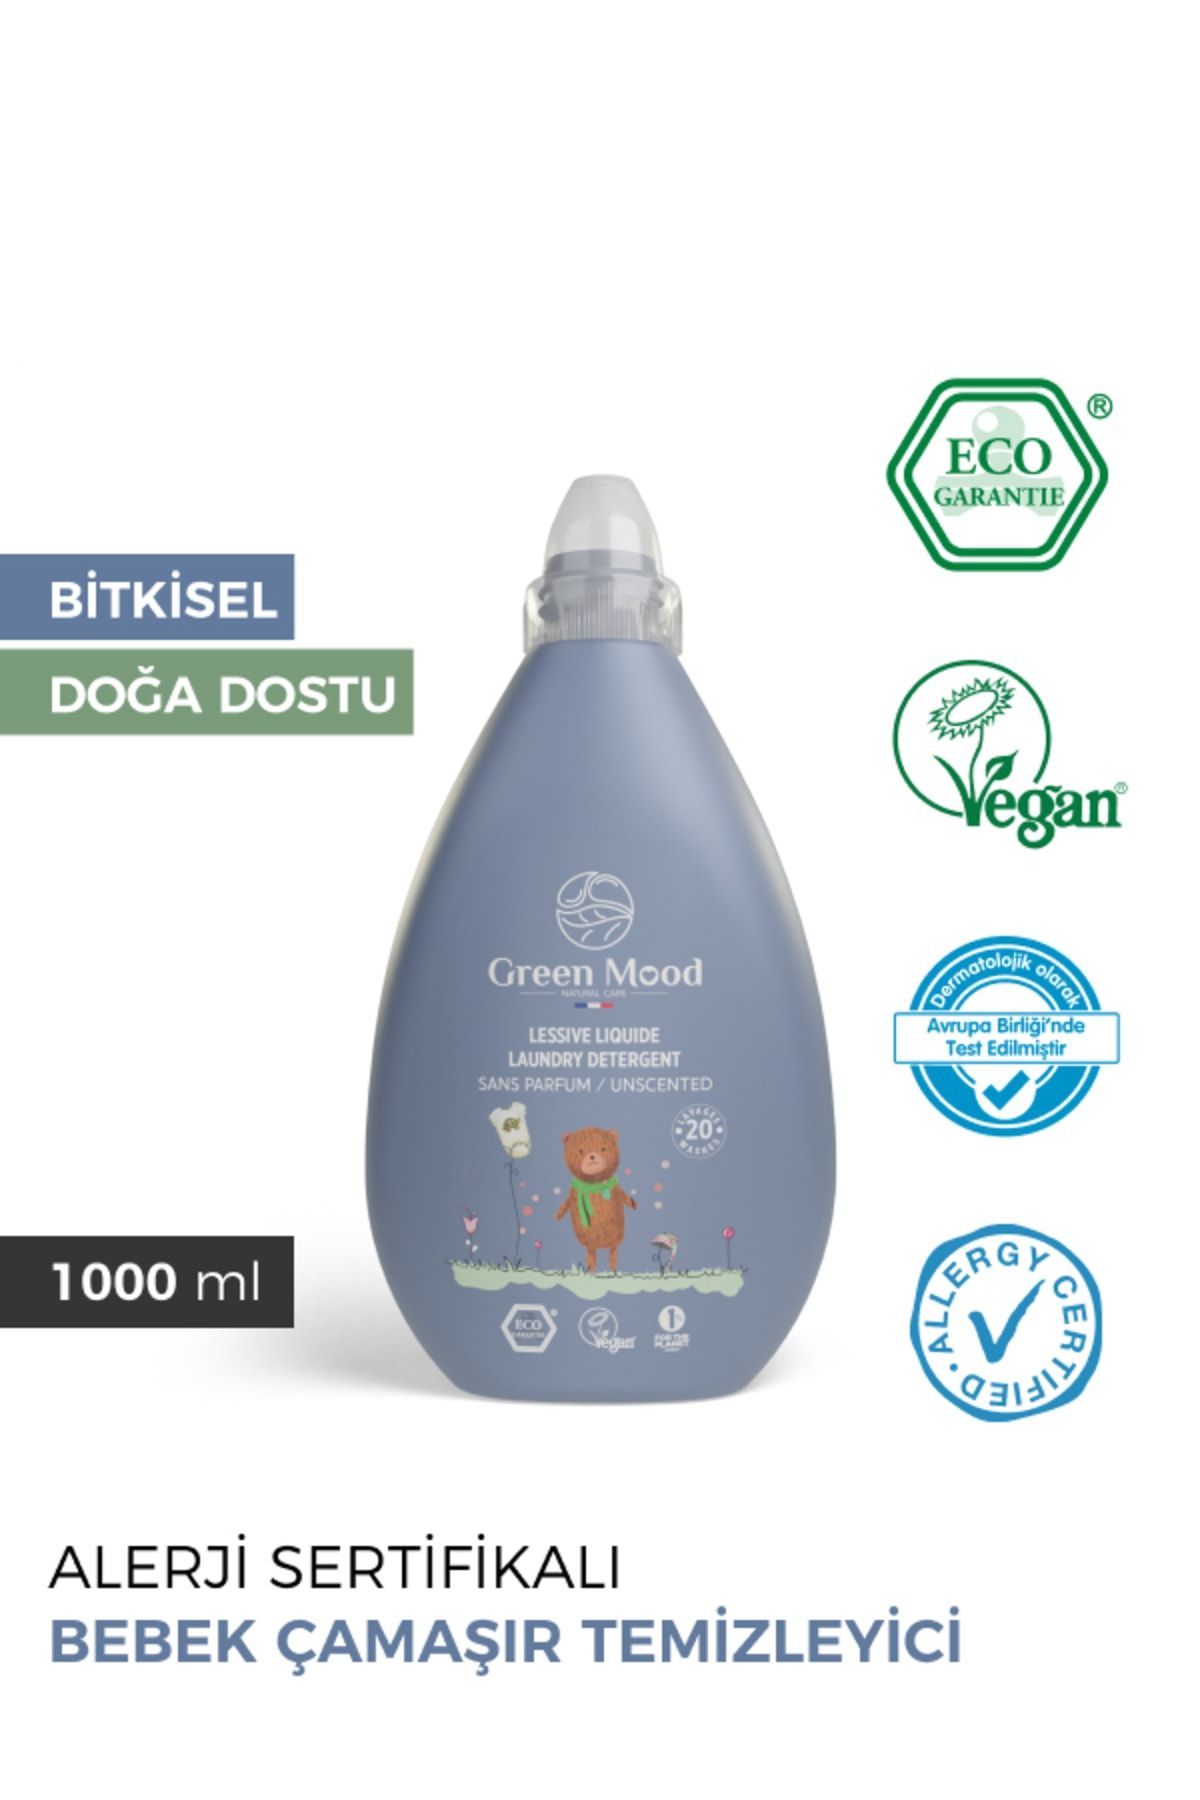 Green Mood Bitkisel Vegan Bebek Çamaşır Deterjanı Parfümsüz Alerji Sertifikalı 1000 ml